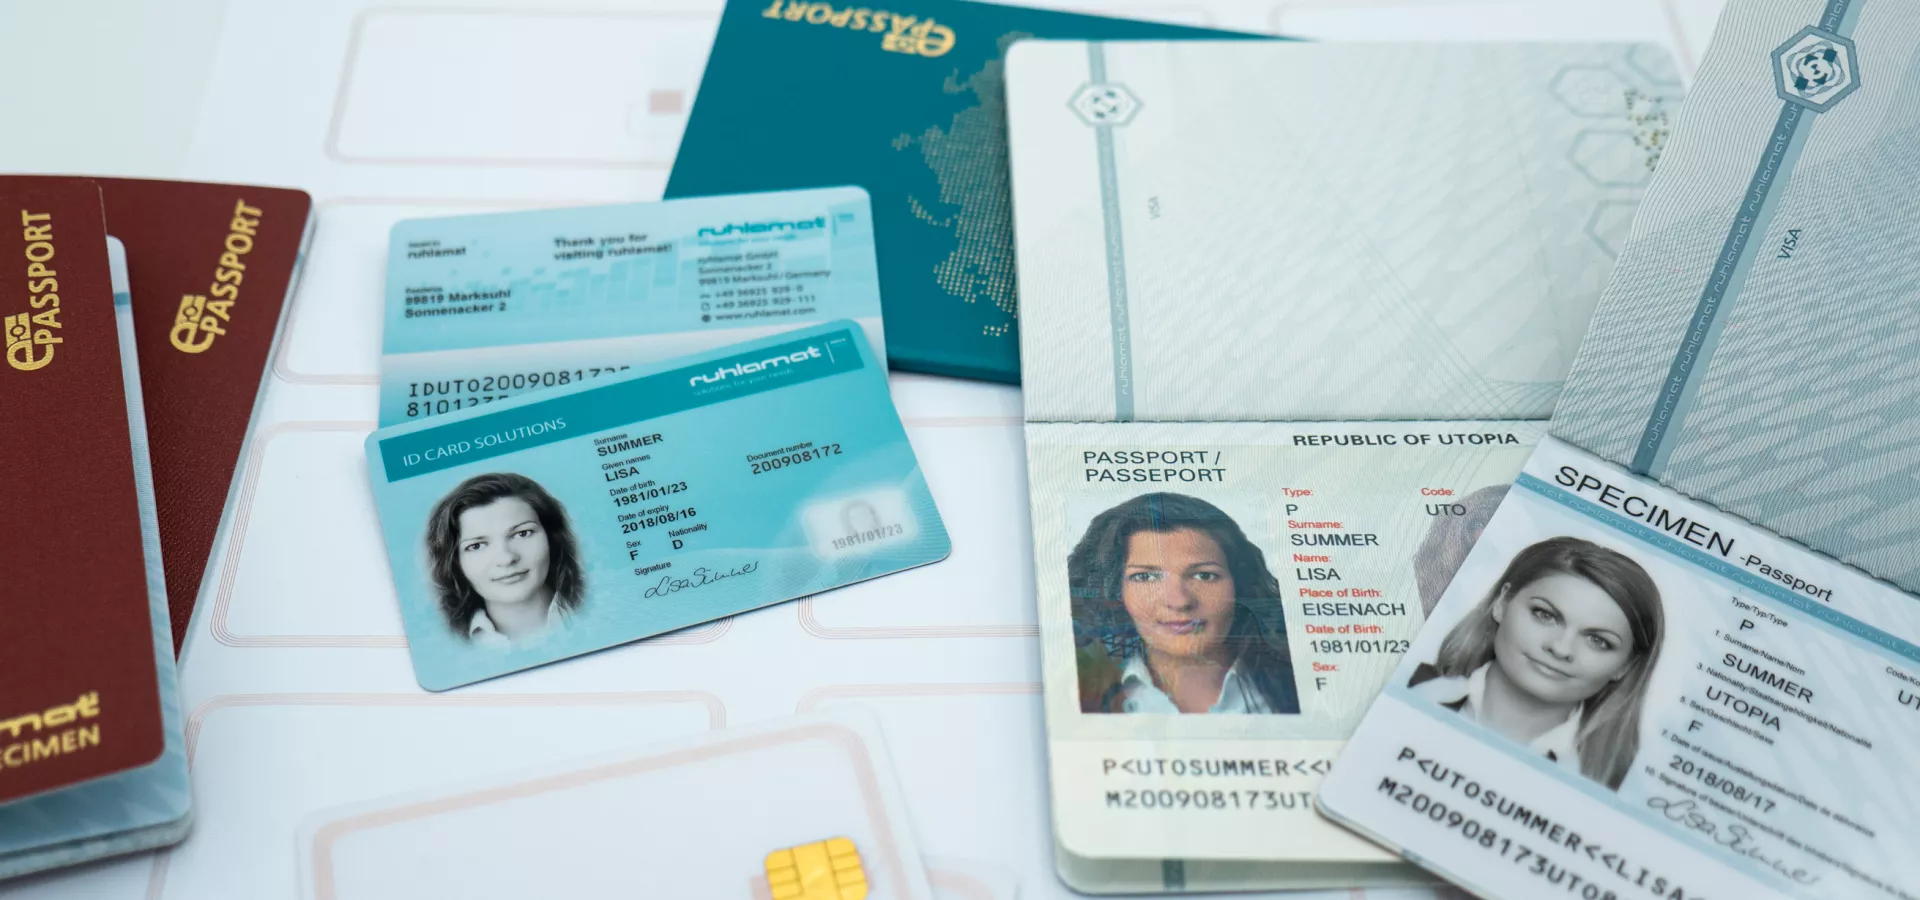 Karten- und Passsysteme